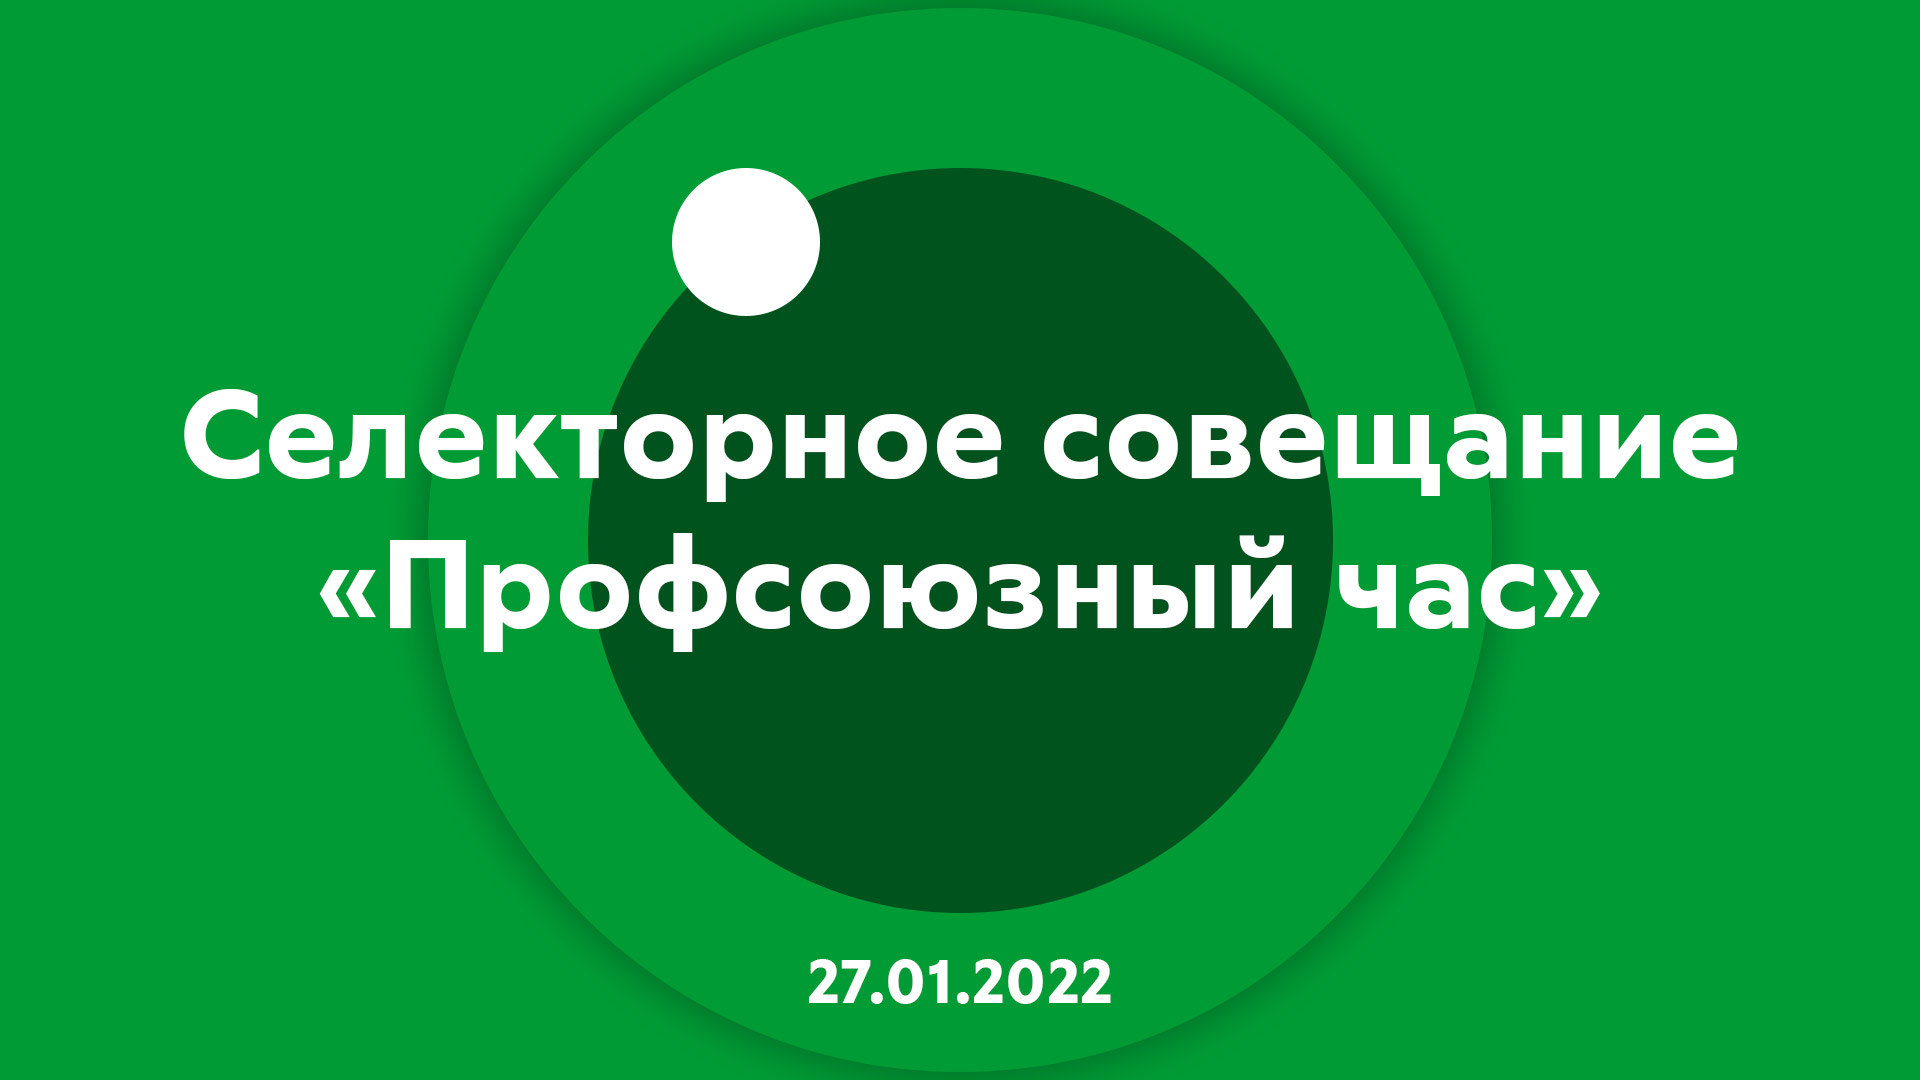 Селекторное совещание "Профсоюзный час" 27.01.2022